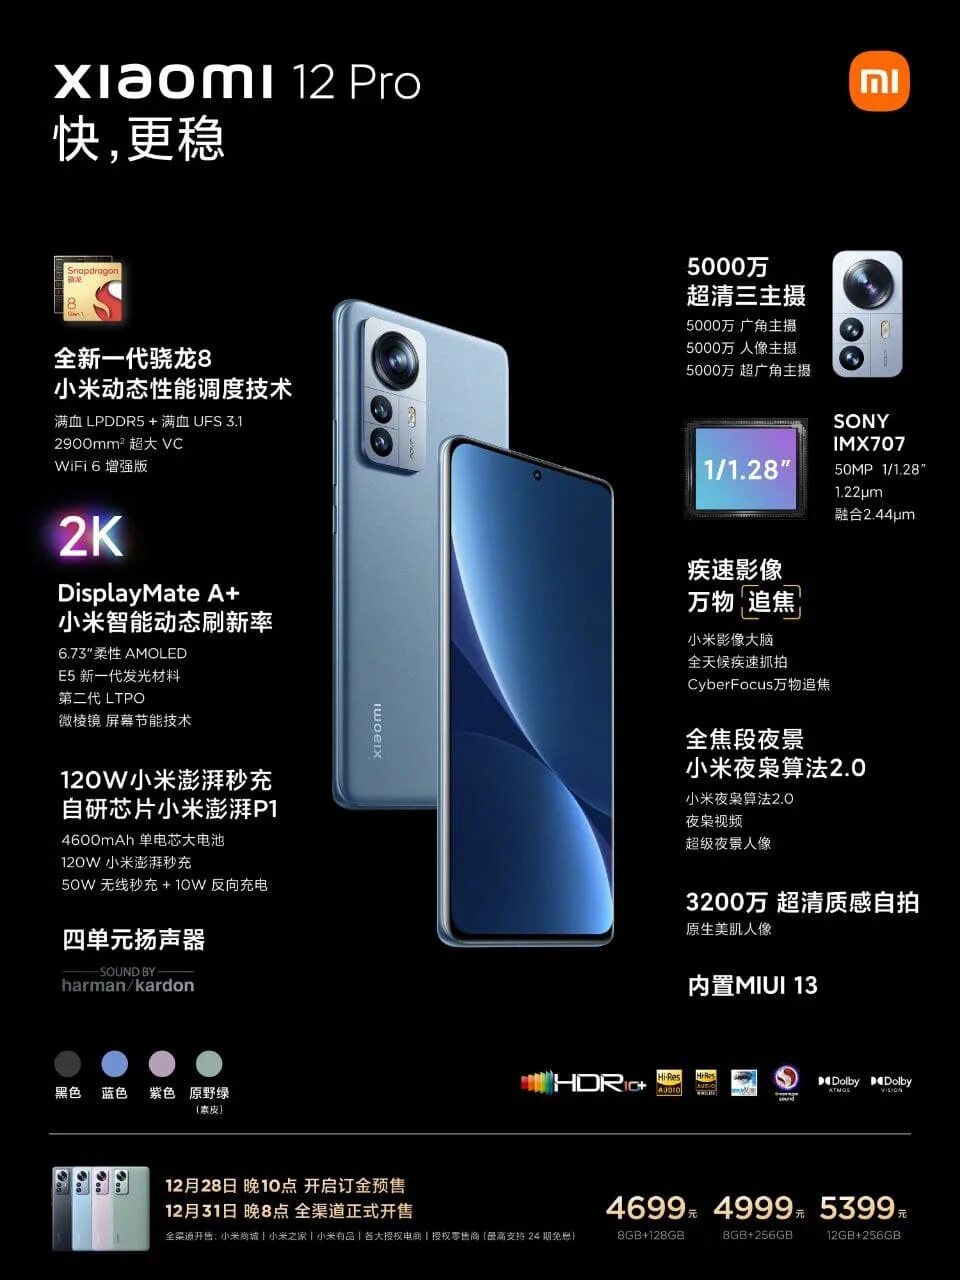 Xiaomi mi 12s Pro. Телефон Xiaomi mi 12 Pro. Смартфон Redmi Note 12 Pro. Смартфон Xiaomi 12 Pro 256gb. Характеристики смартфона note 12 pro